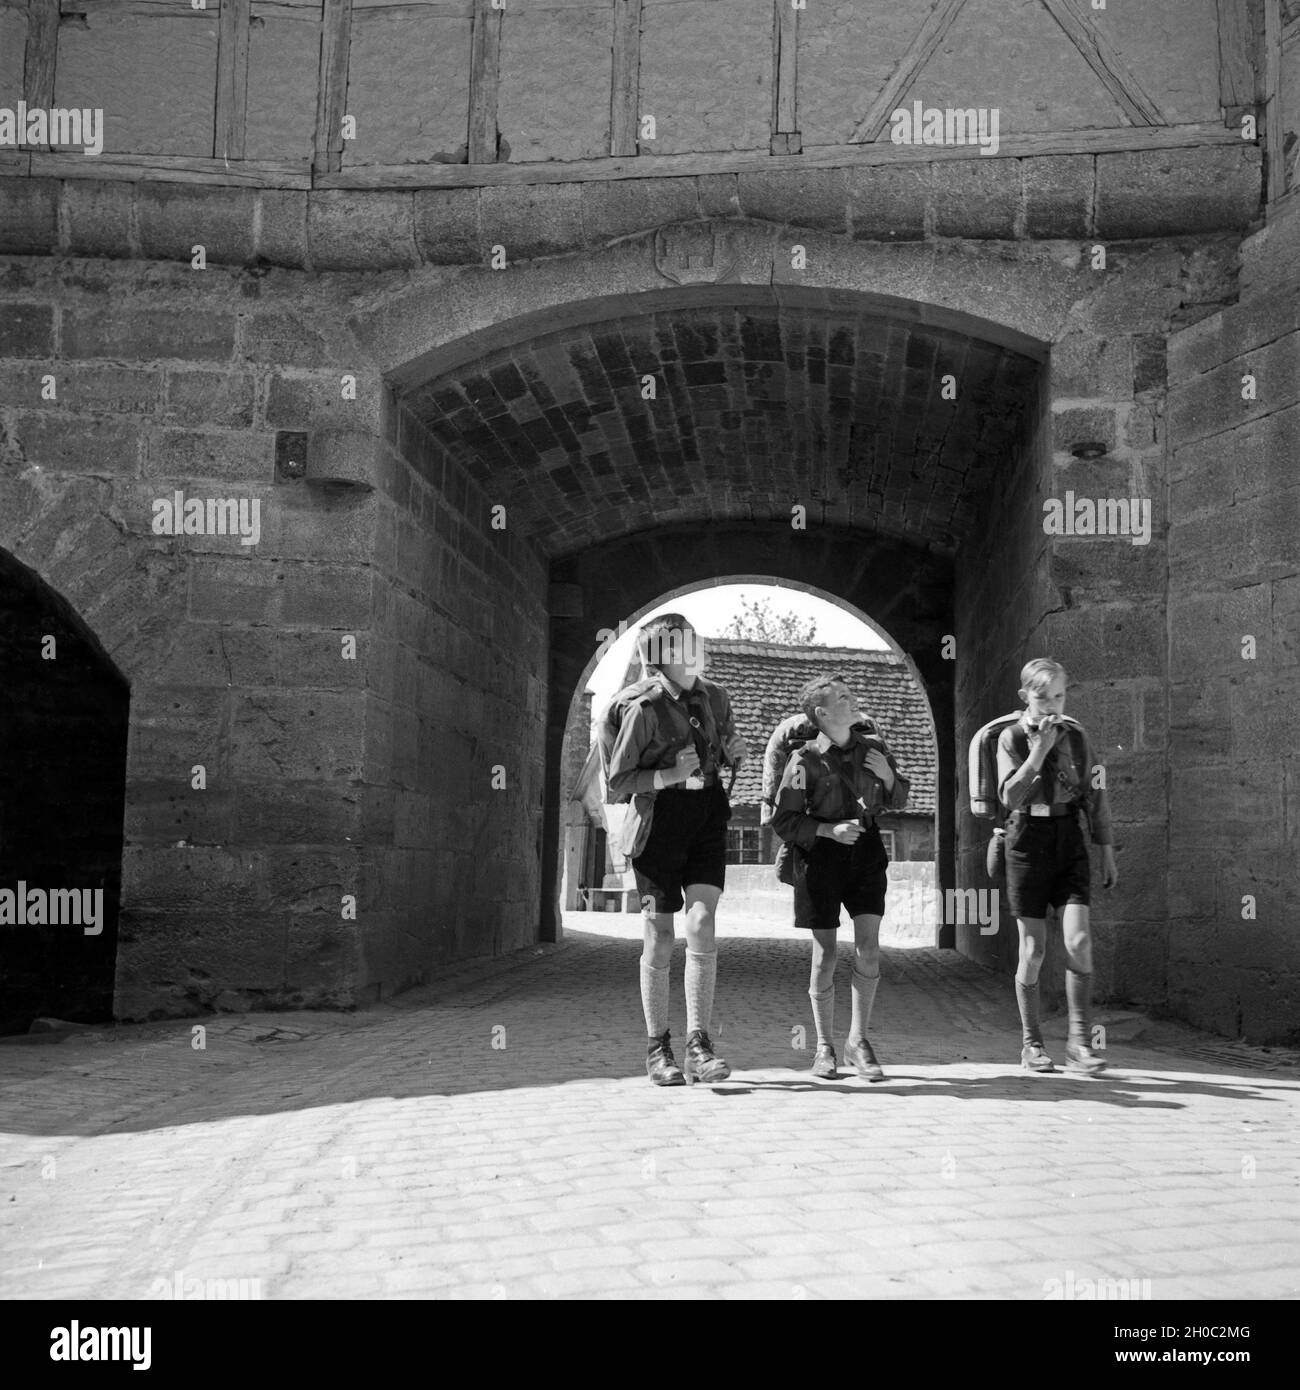 Drei Hitlerjungen besichtigen das historische Rothenburg ob der Tauber, Deutschland 1930er Jahre. Three Hitler youths sightseeing at Rotheburg ob der Tauber, Germany 1930s. Stock Photo